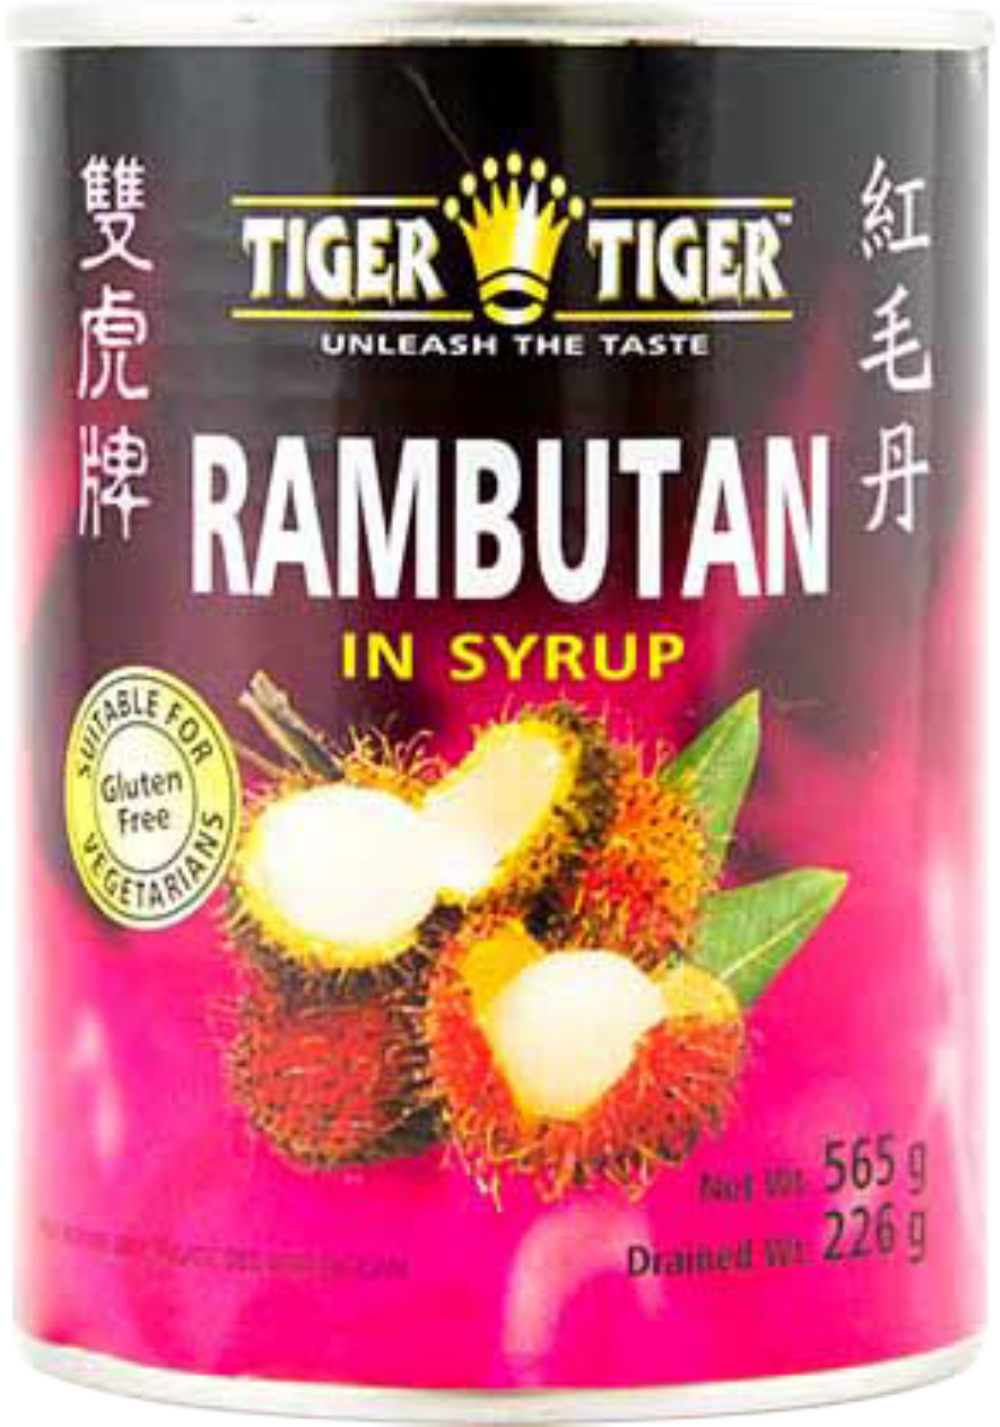 TIGER TIGER Rambutan in Syrup 565g